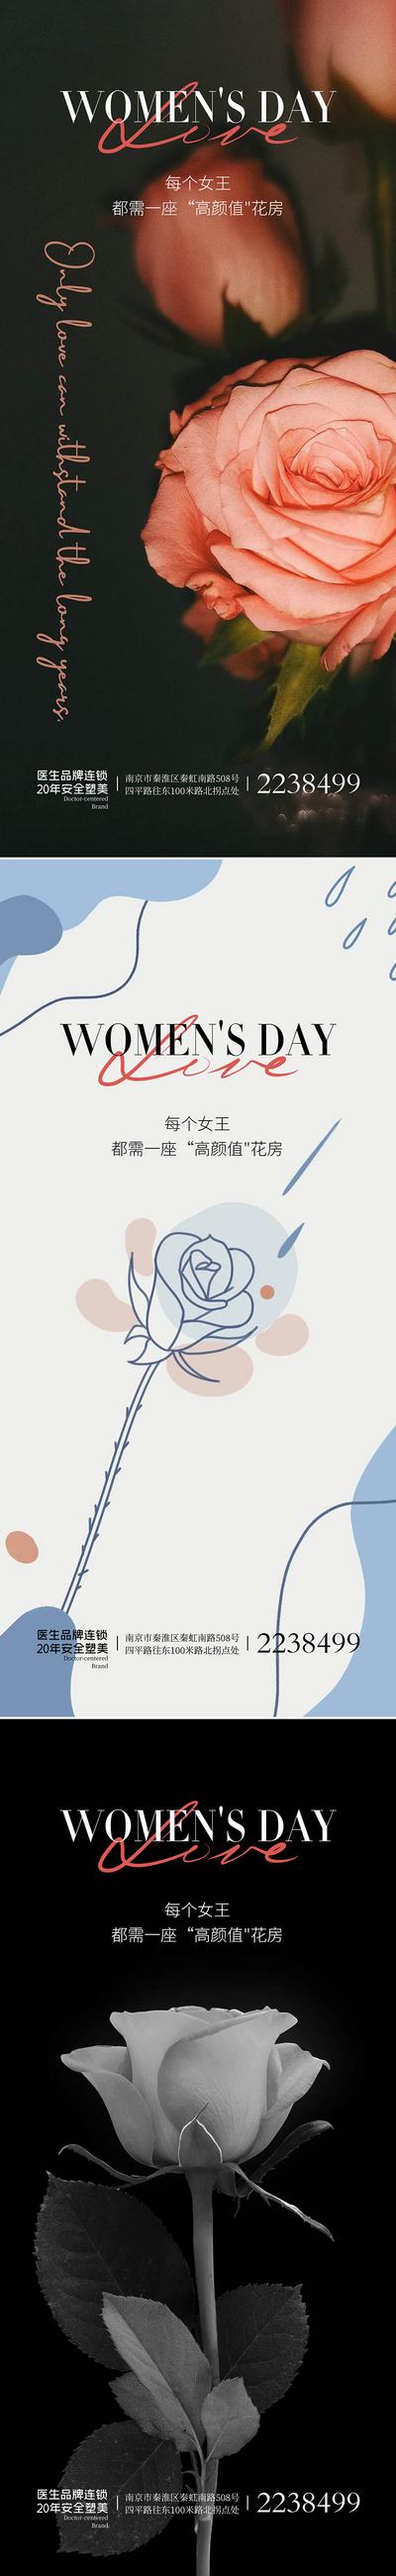 南门网 广告 海报 公历节日 女王节 女神节 38 妇女节 系列